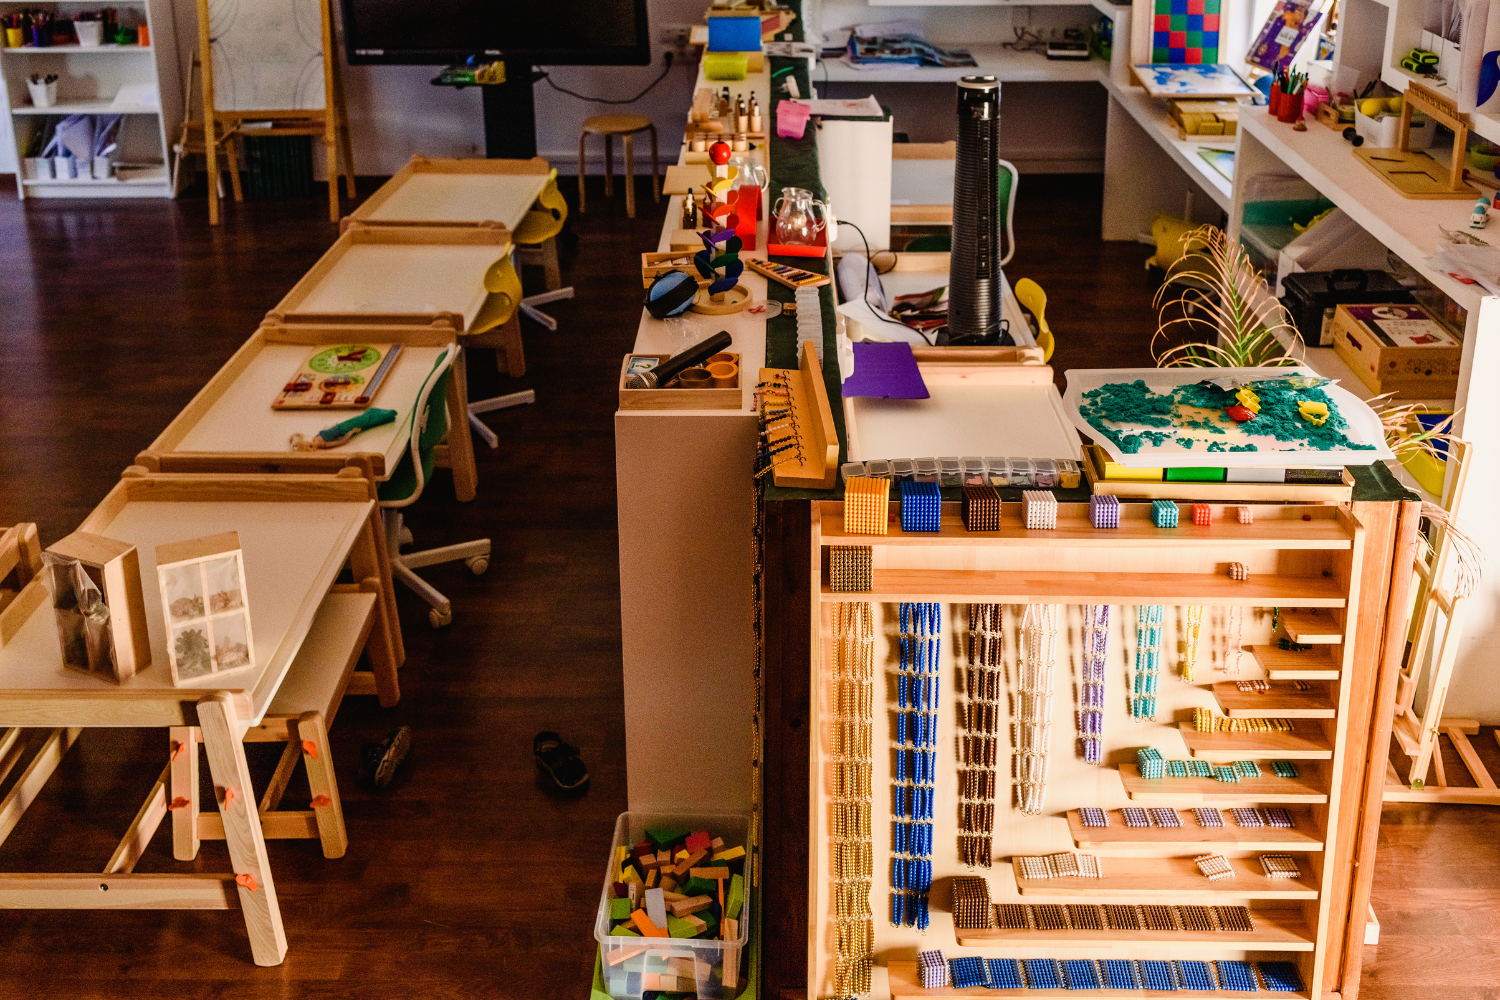 Montessori materials in a classroom